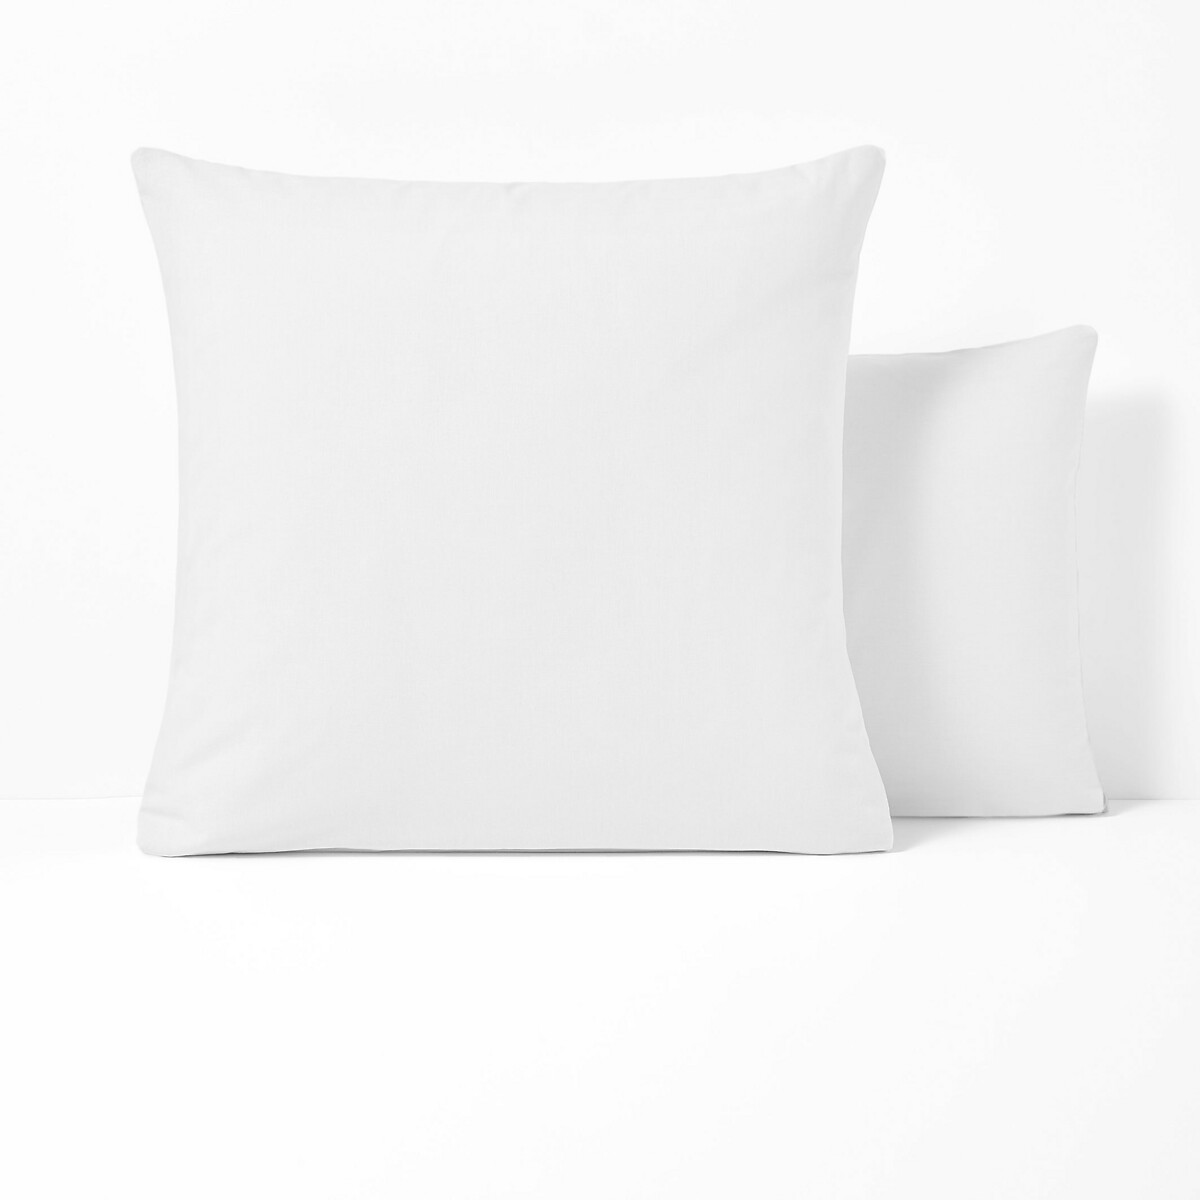 Premium Quality Polycotton Pillowcase Non Iron Plain Standard Pillow COVER Shams 